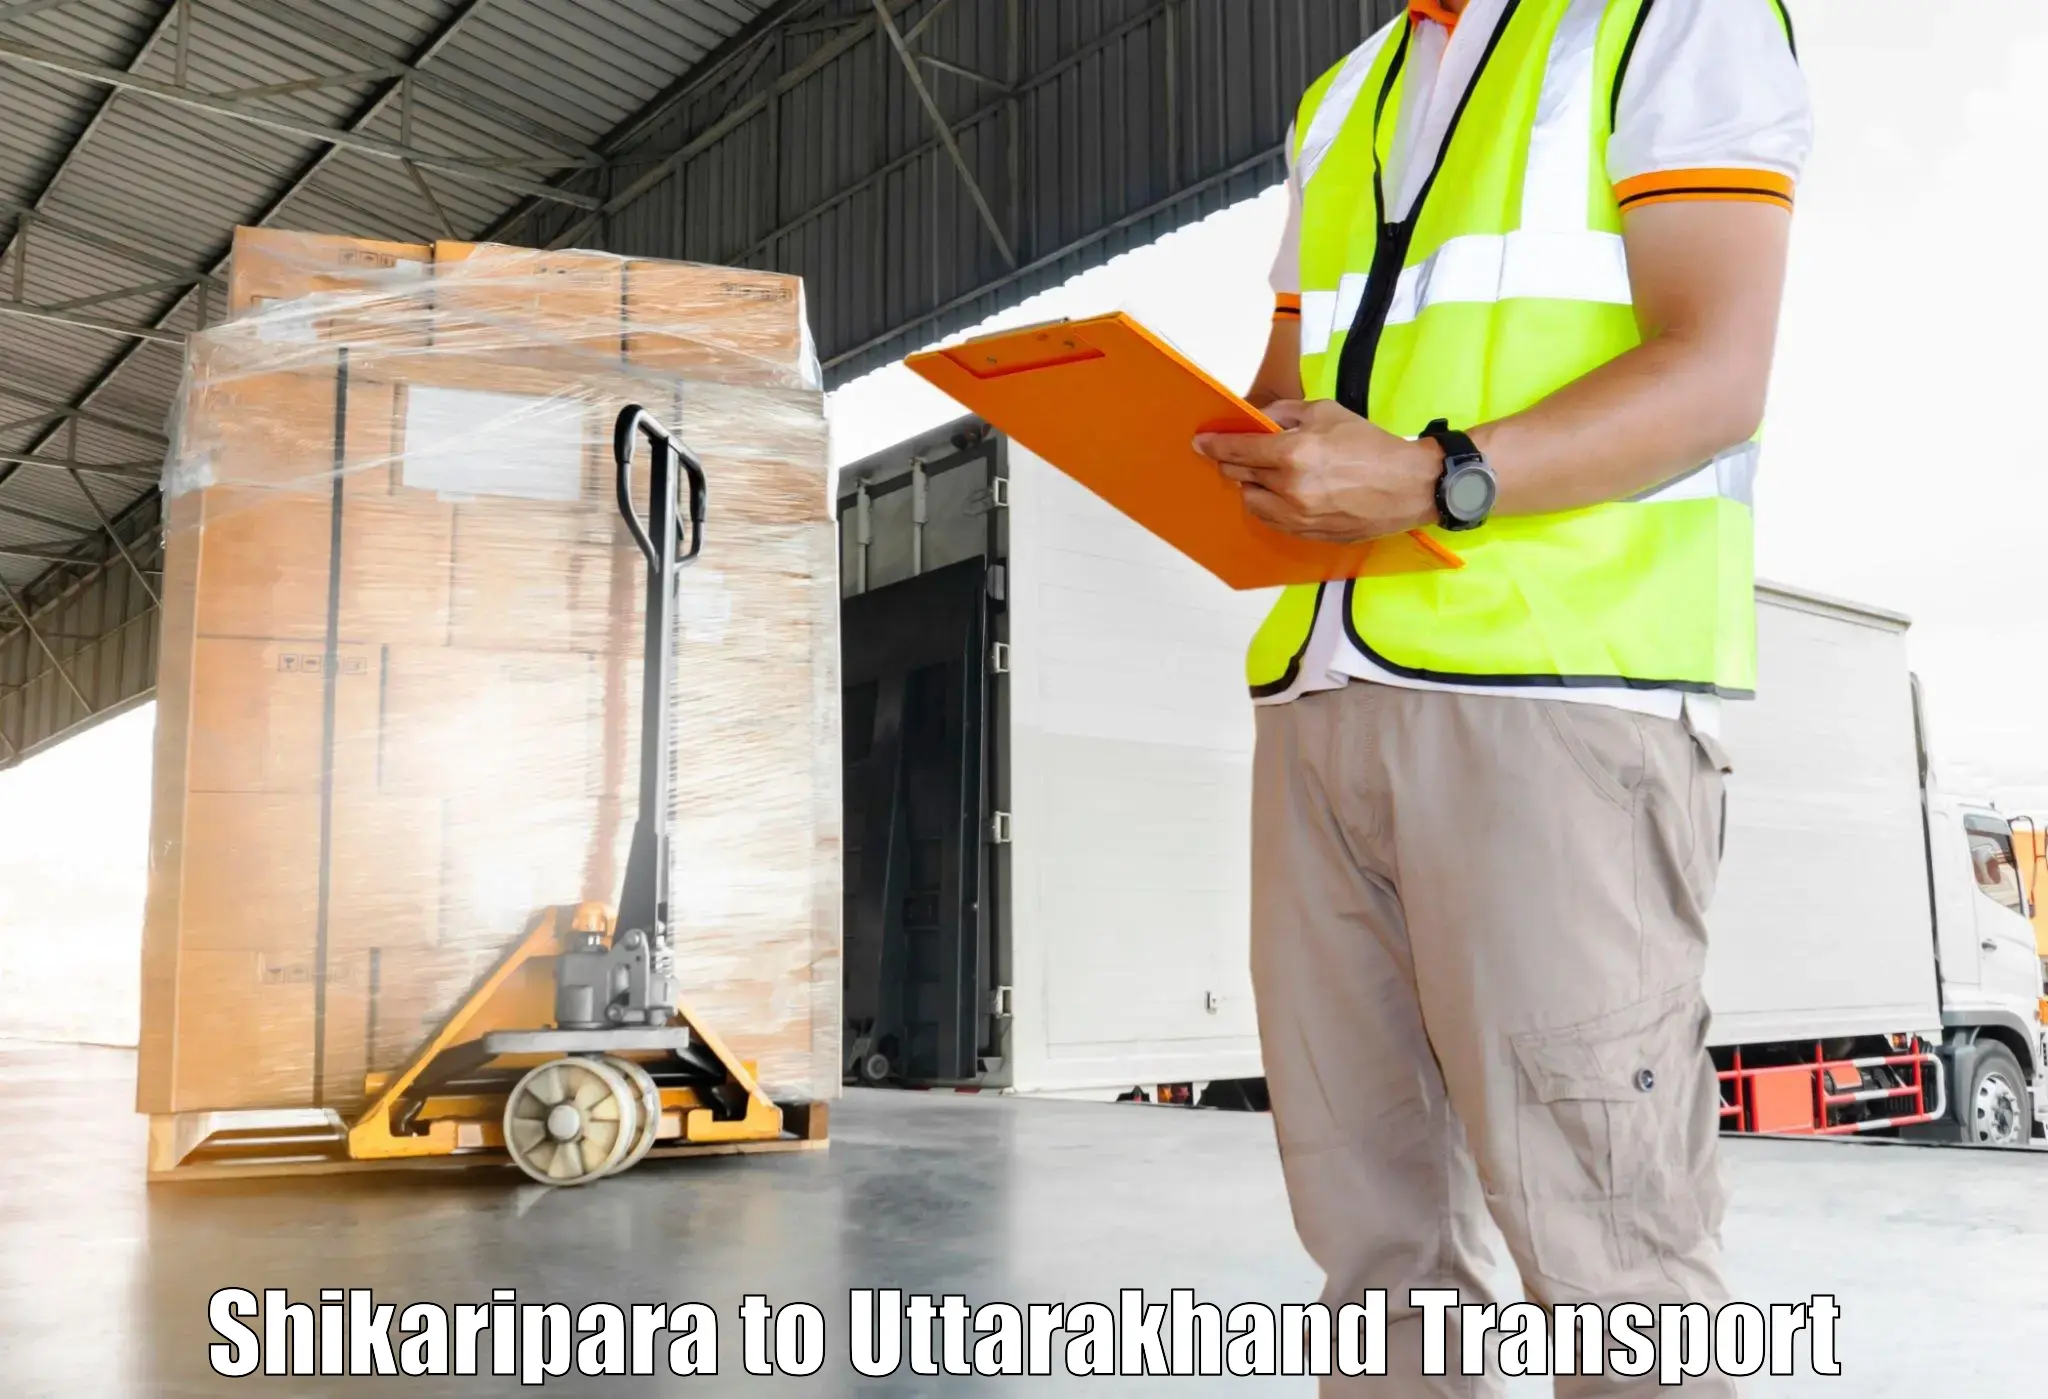 Furniture transport service Shikaripara to Bageshwar